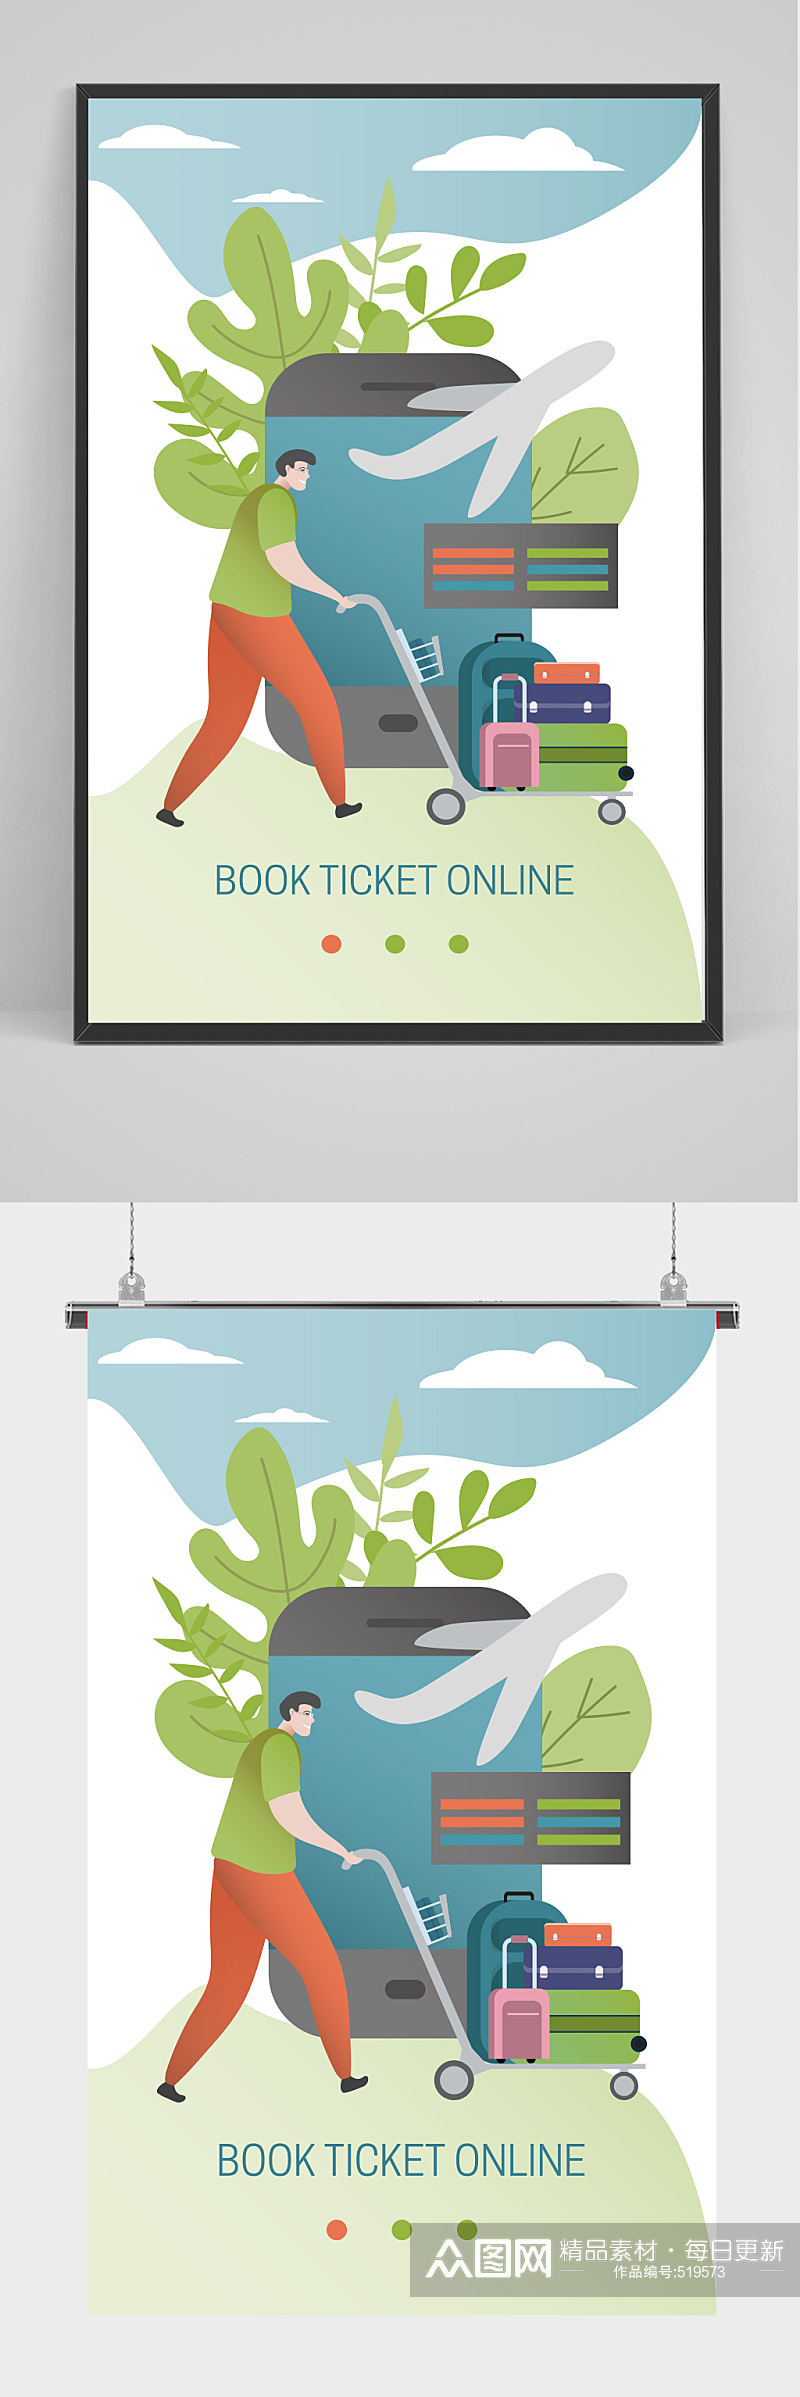 卡通矢量手机订票旅行海报设计素材